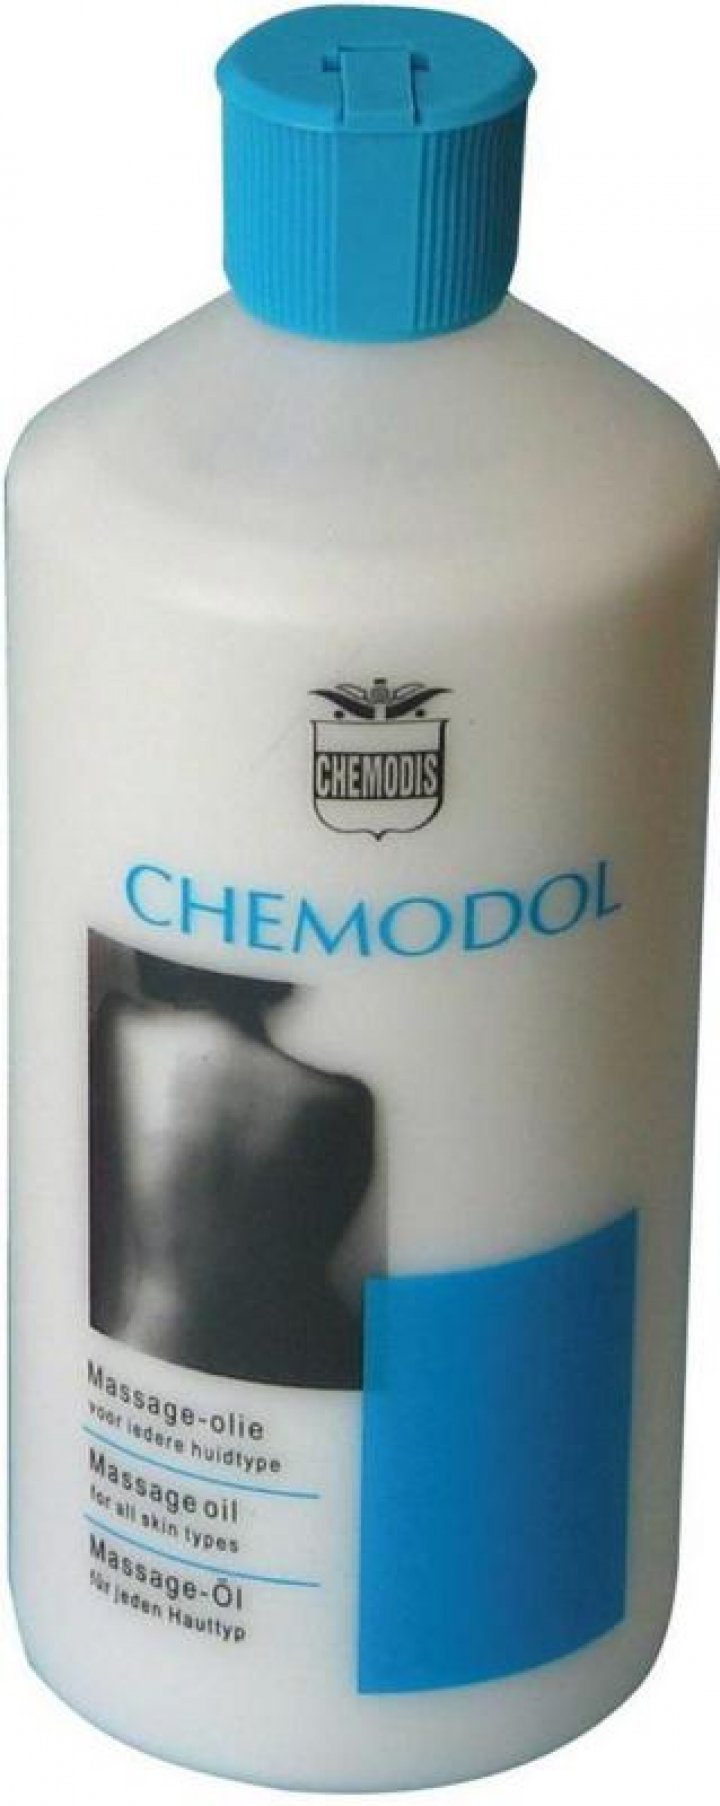 Óleo de massagem neutro dermatologicamente testado, de fácil absorção pela pele, durável e solúvel com água Chemodol 500ml